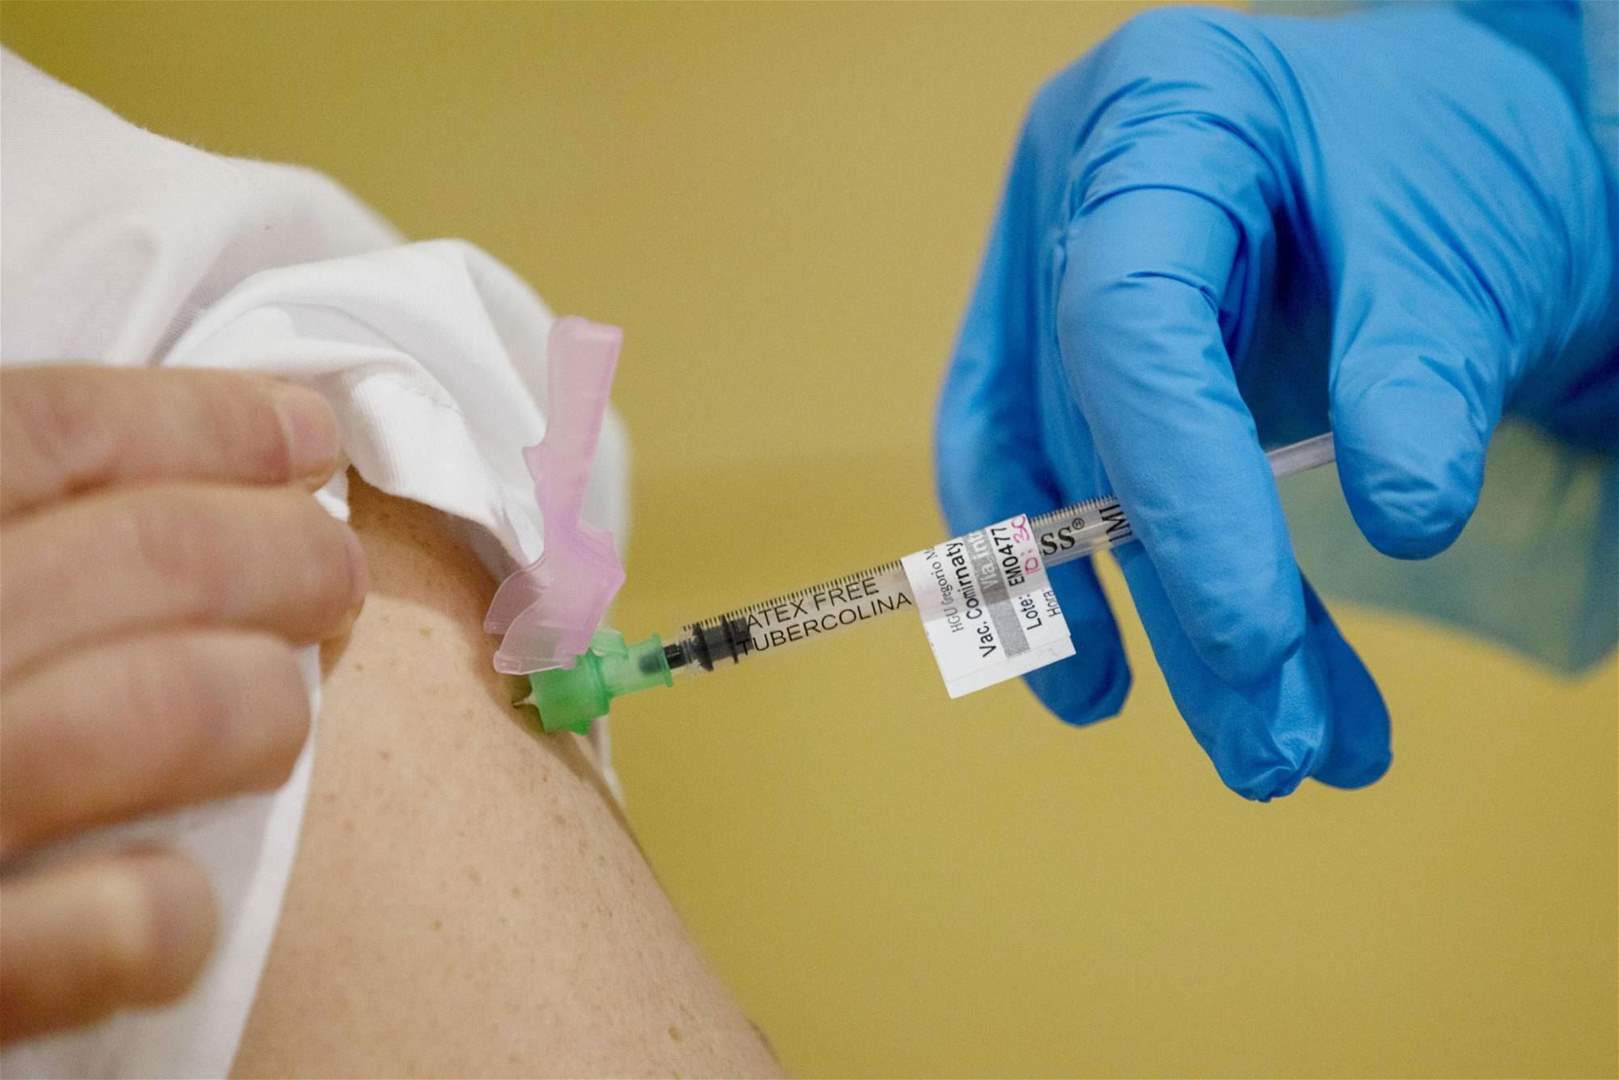 أعراض جانبية للقاح كورونا قد تكون في الواقع "علامات جيدة"